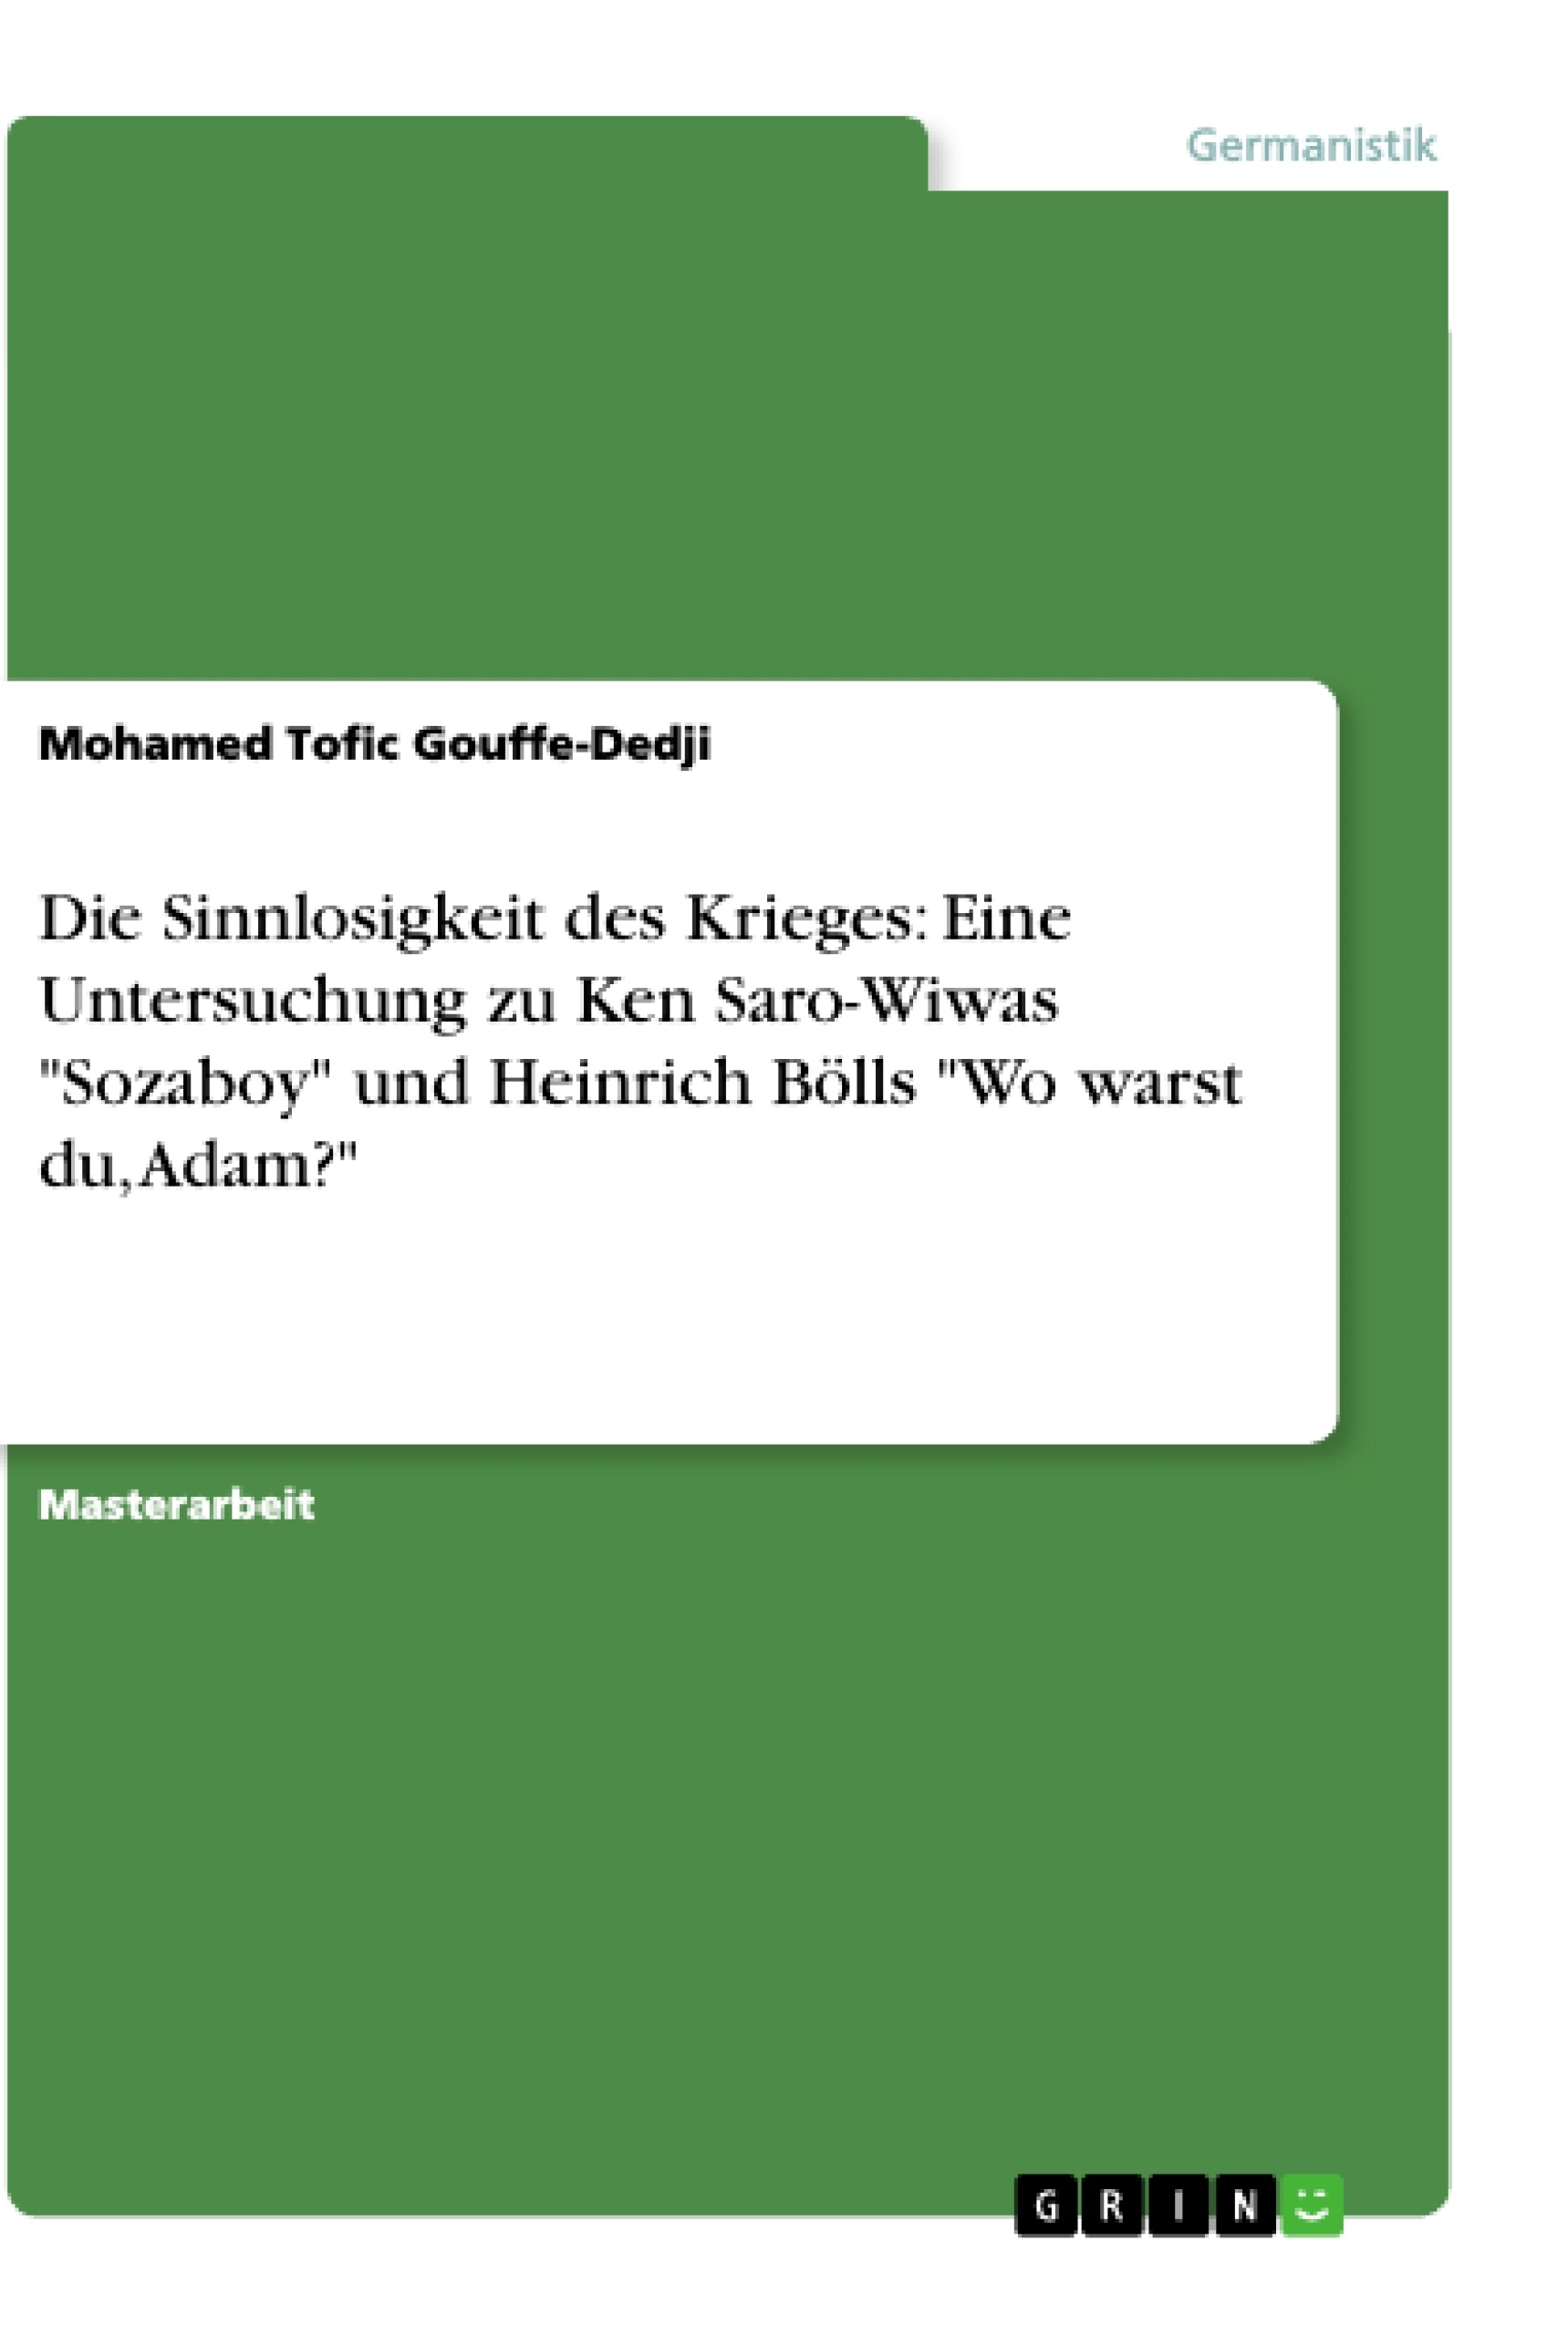 Titre: Die Sinnlosigkeit des Krieges: Eine Untersuchung zu Ken Saro-Wiwas "Sozaboy" und Heinrich Bölls "Wo warst du, Adam?"